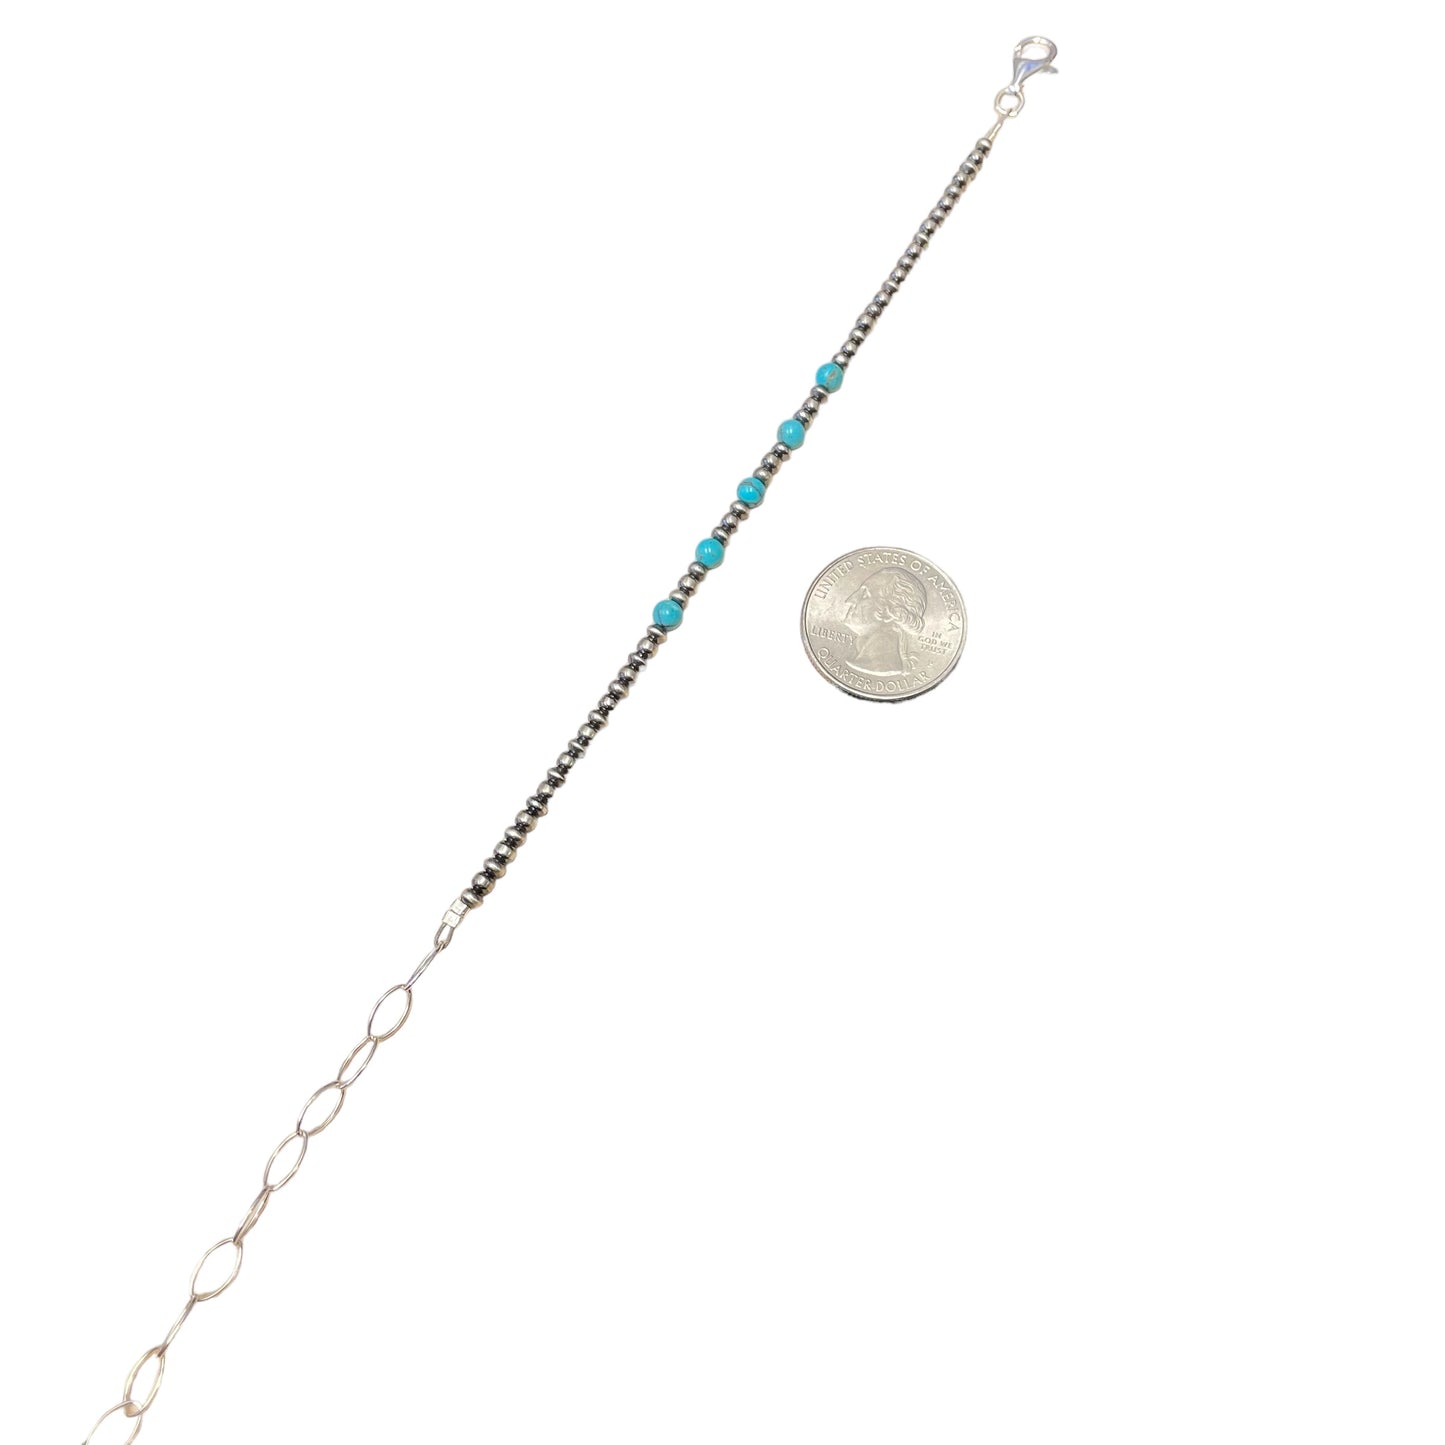 Blue Turquoise Desert Pearl Bead Bracelet Sterling Silver